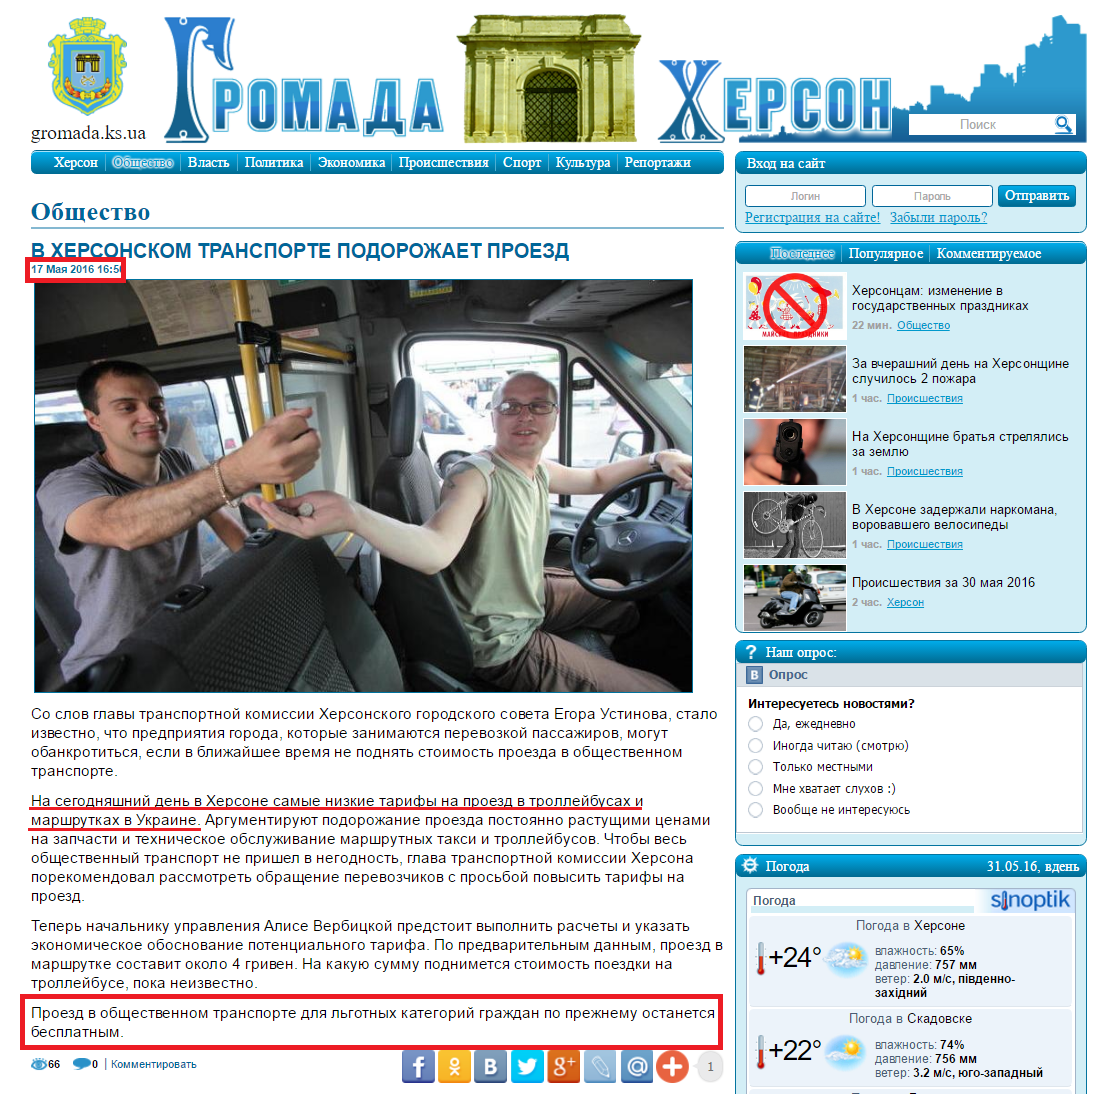 http://gromada.ks.ua/obschestvo/v-hersonskom-transporte-podorozhaet-proezd/